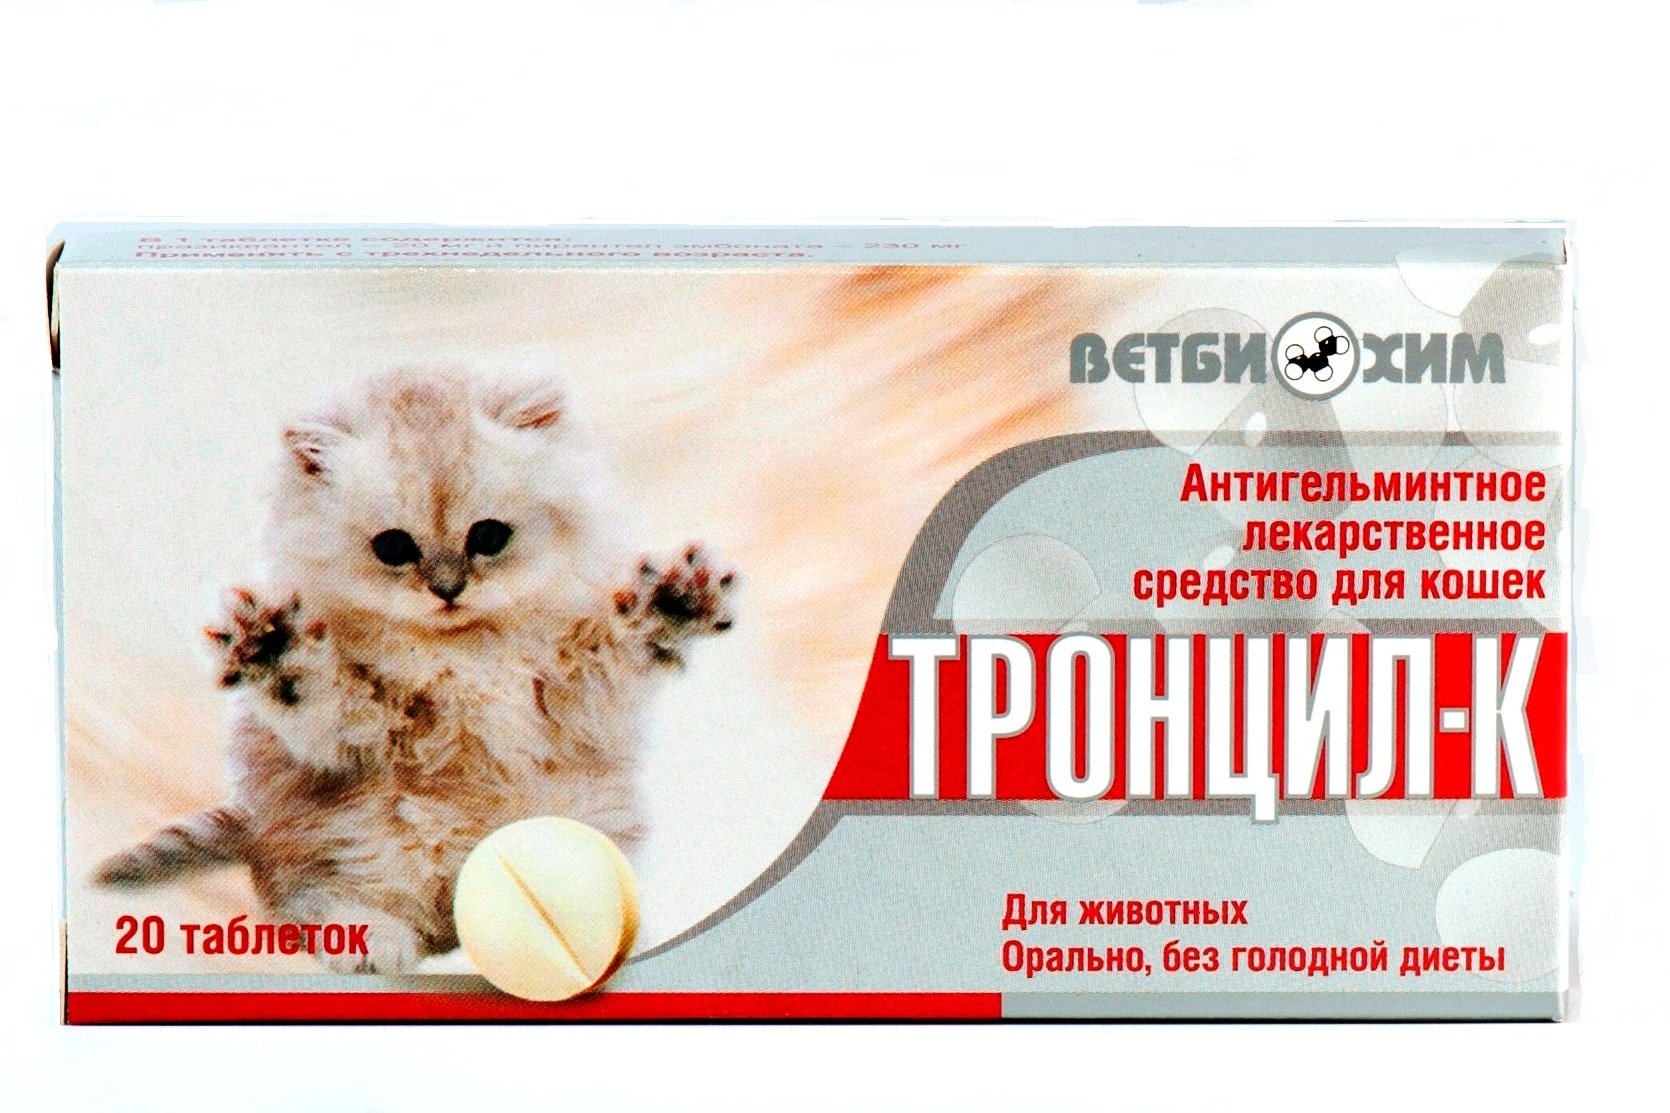 Тронцил-К для кошек